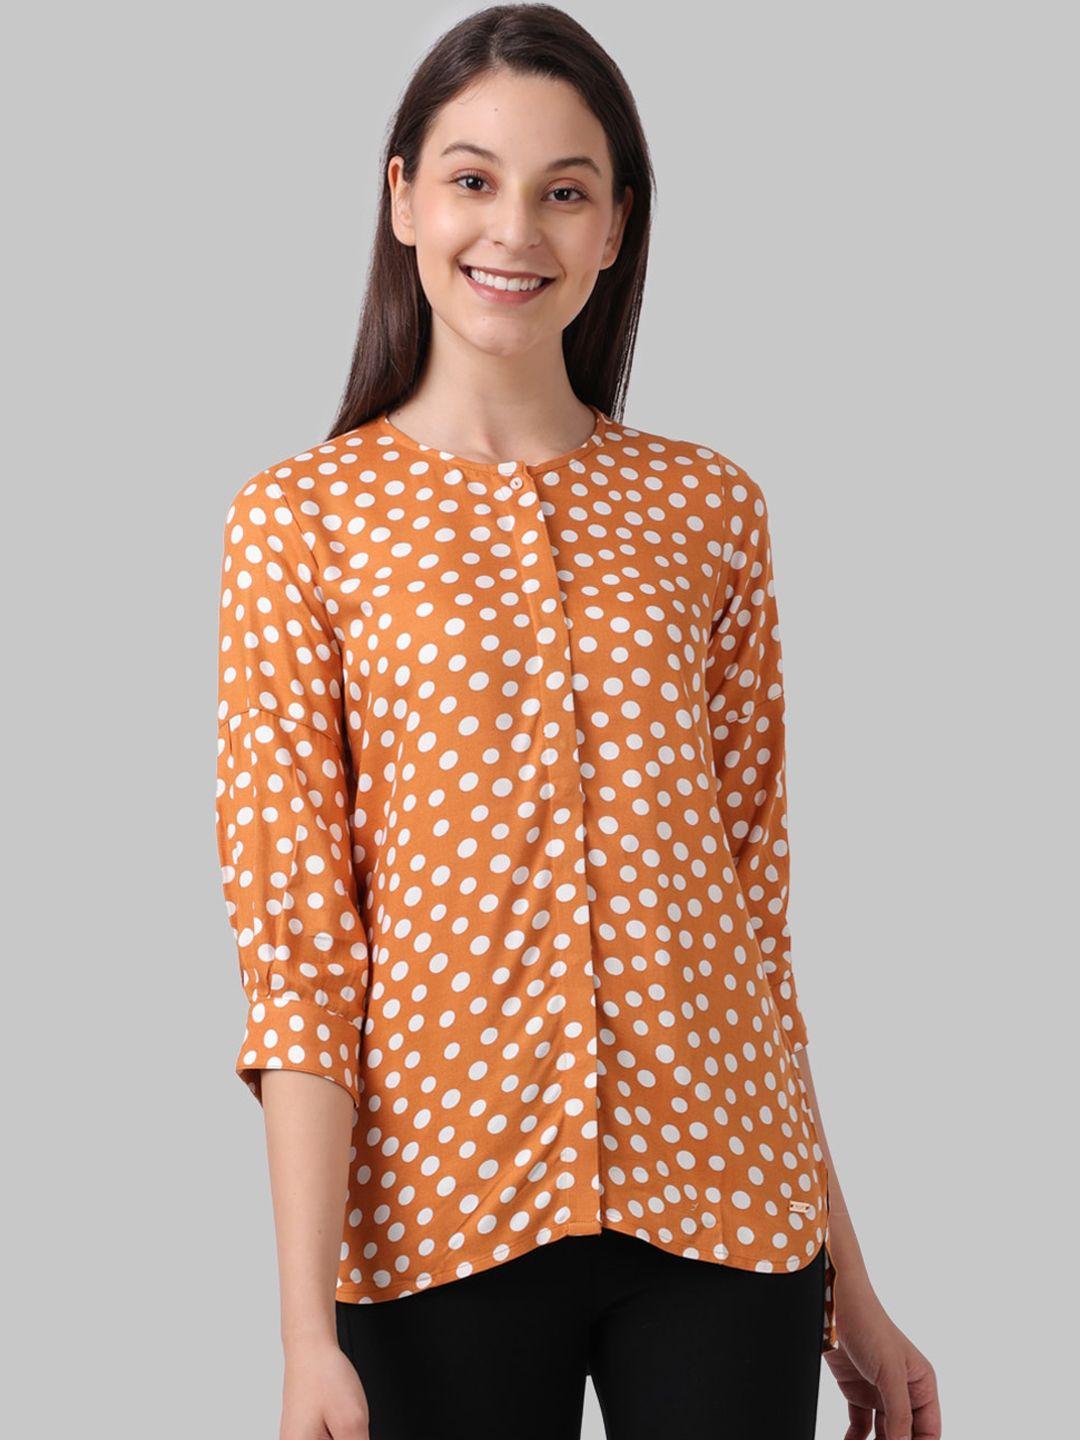 park avenue woman orange & white polka dot shirt style top